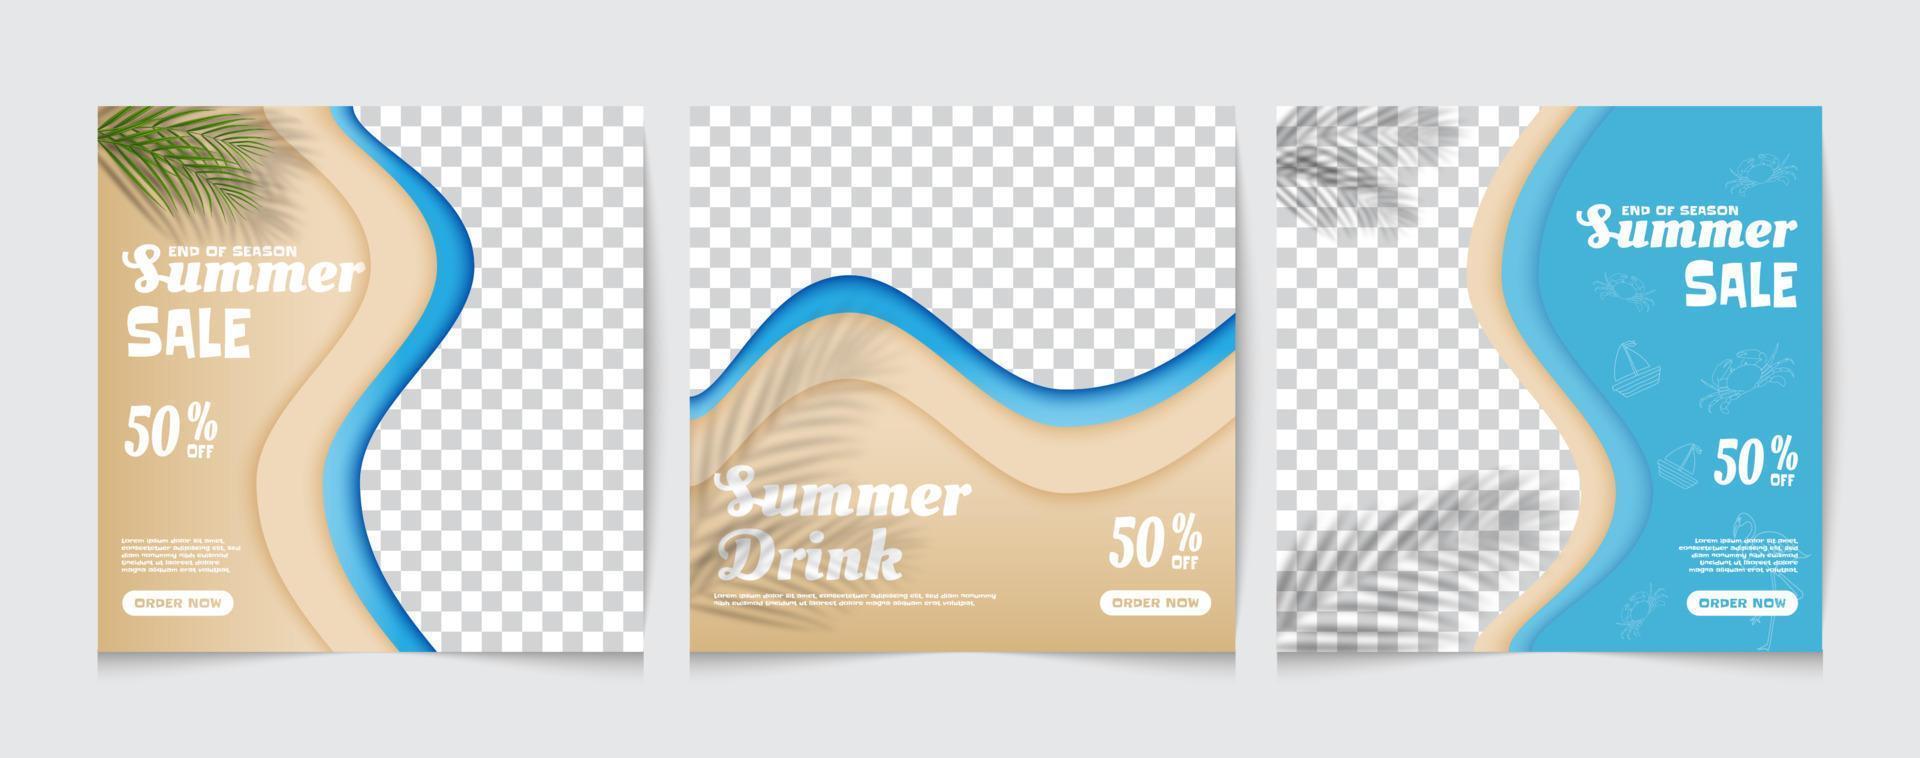 modello di poster di social media per le vendite estive con elementi di spiaggia estiva vettore